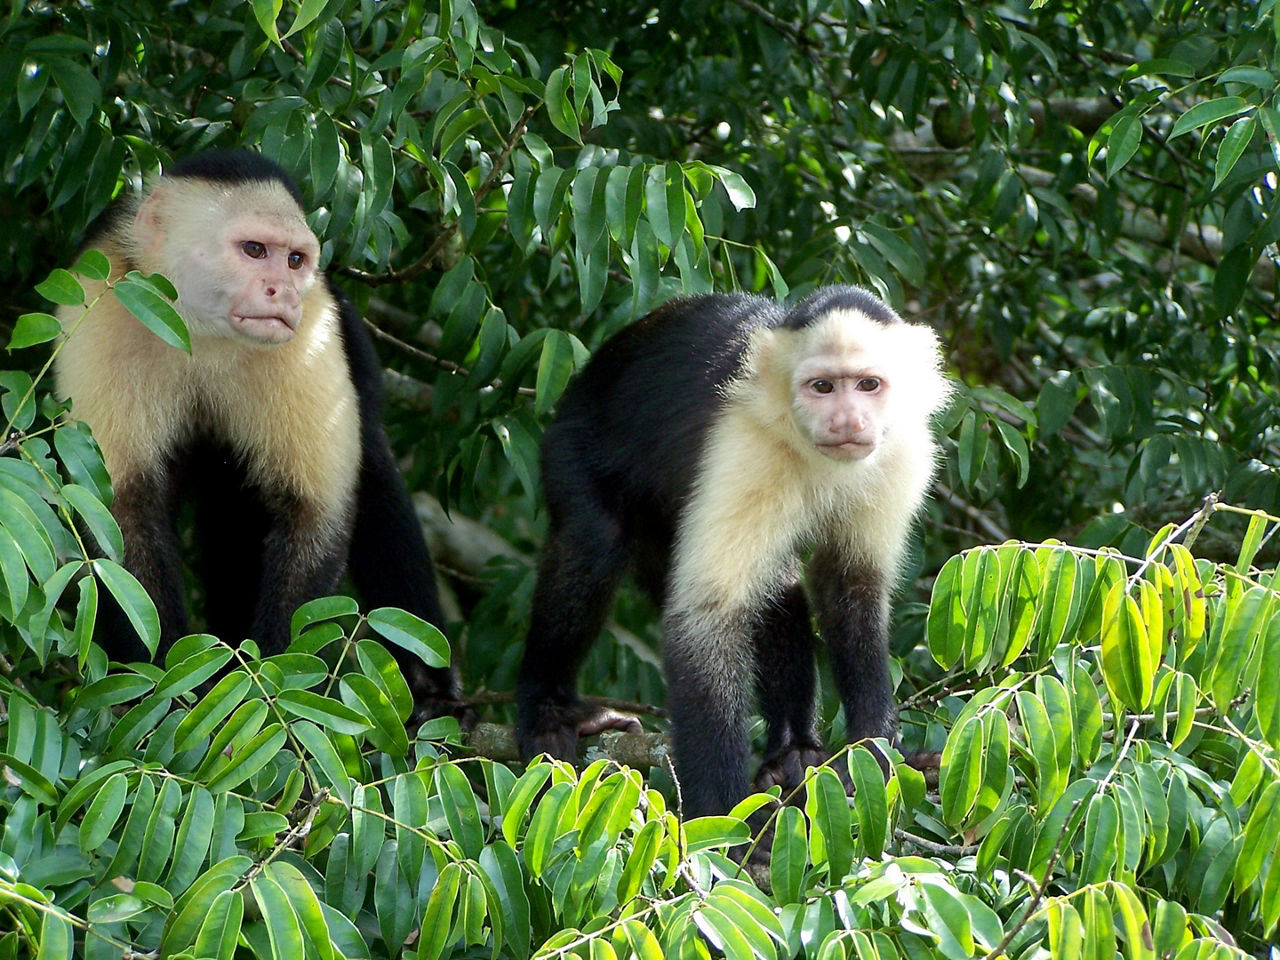 Caupchin monkeys on Monkey Island in Lake Gatun on the Panama Canal